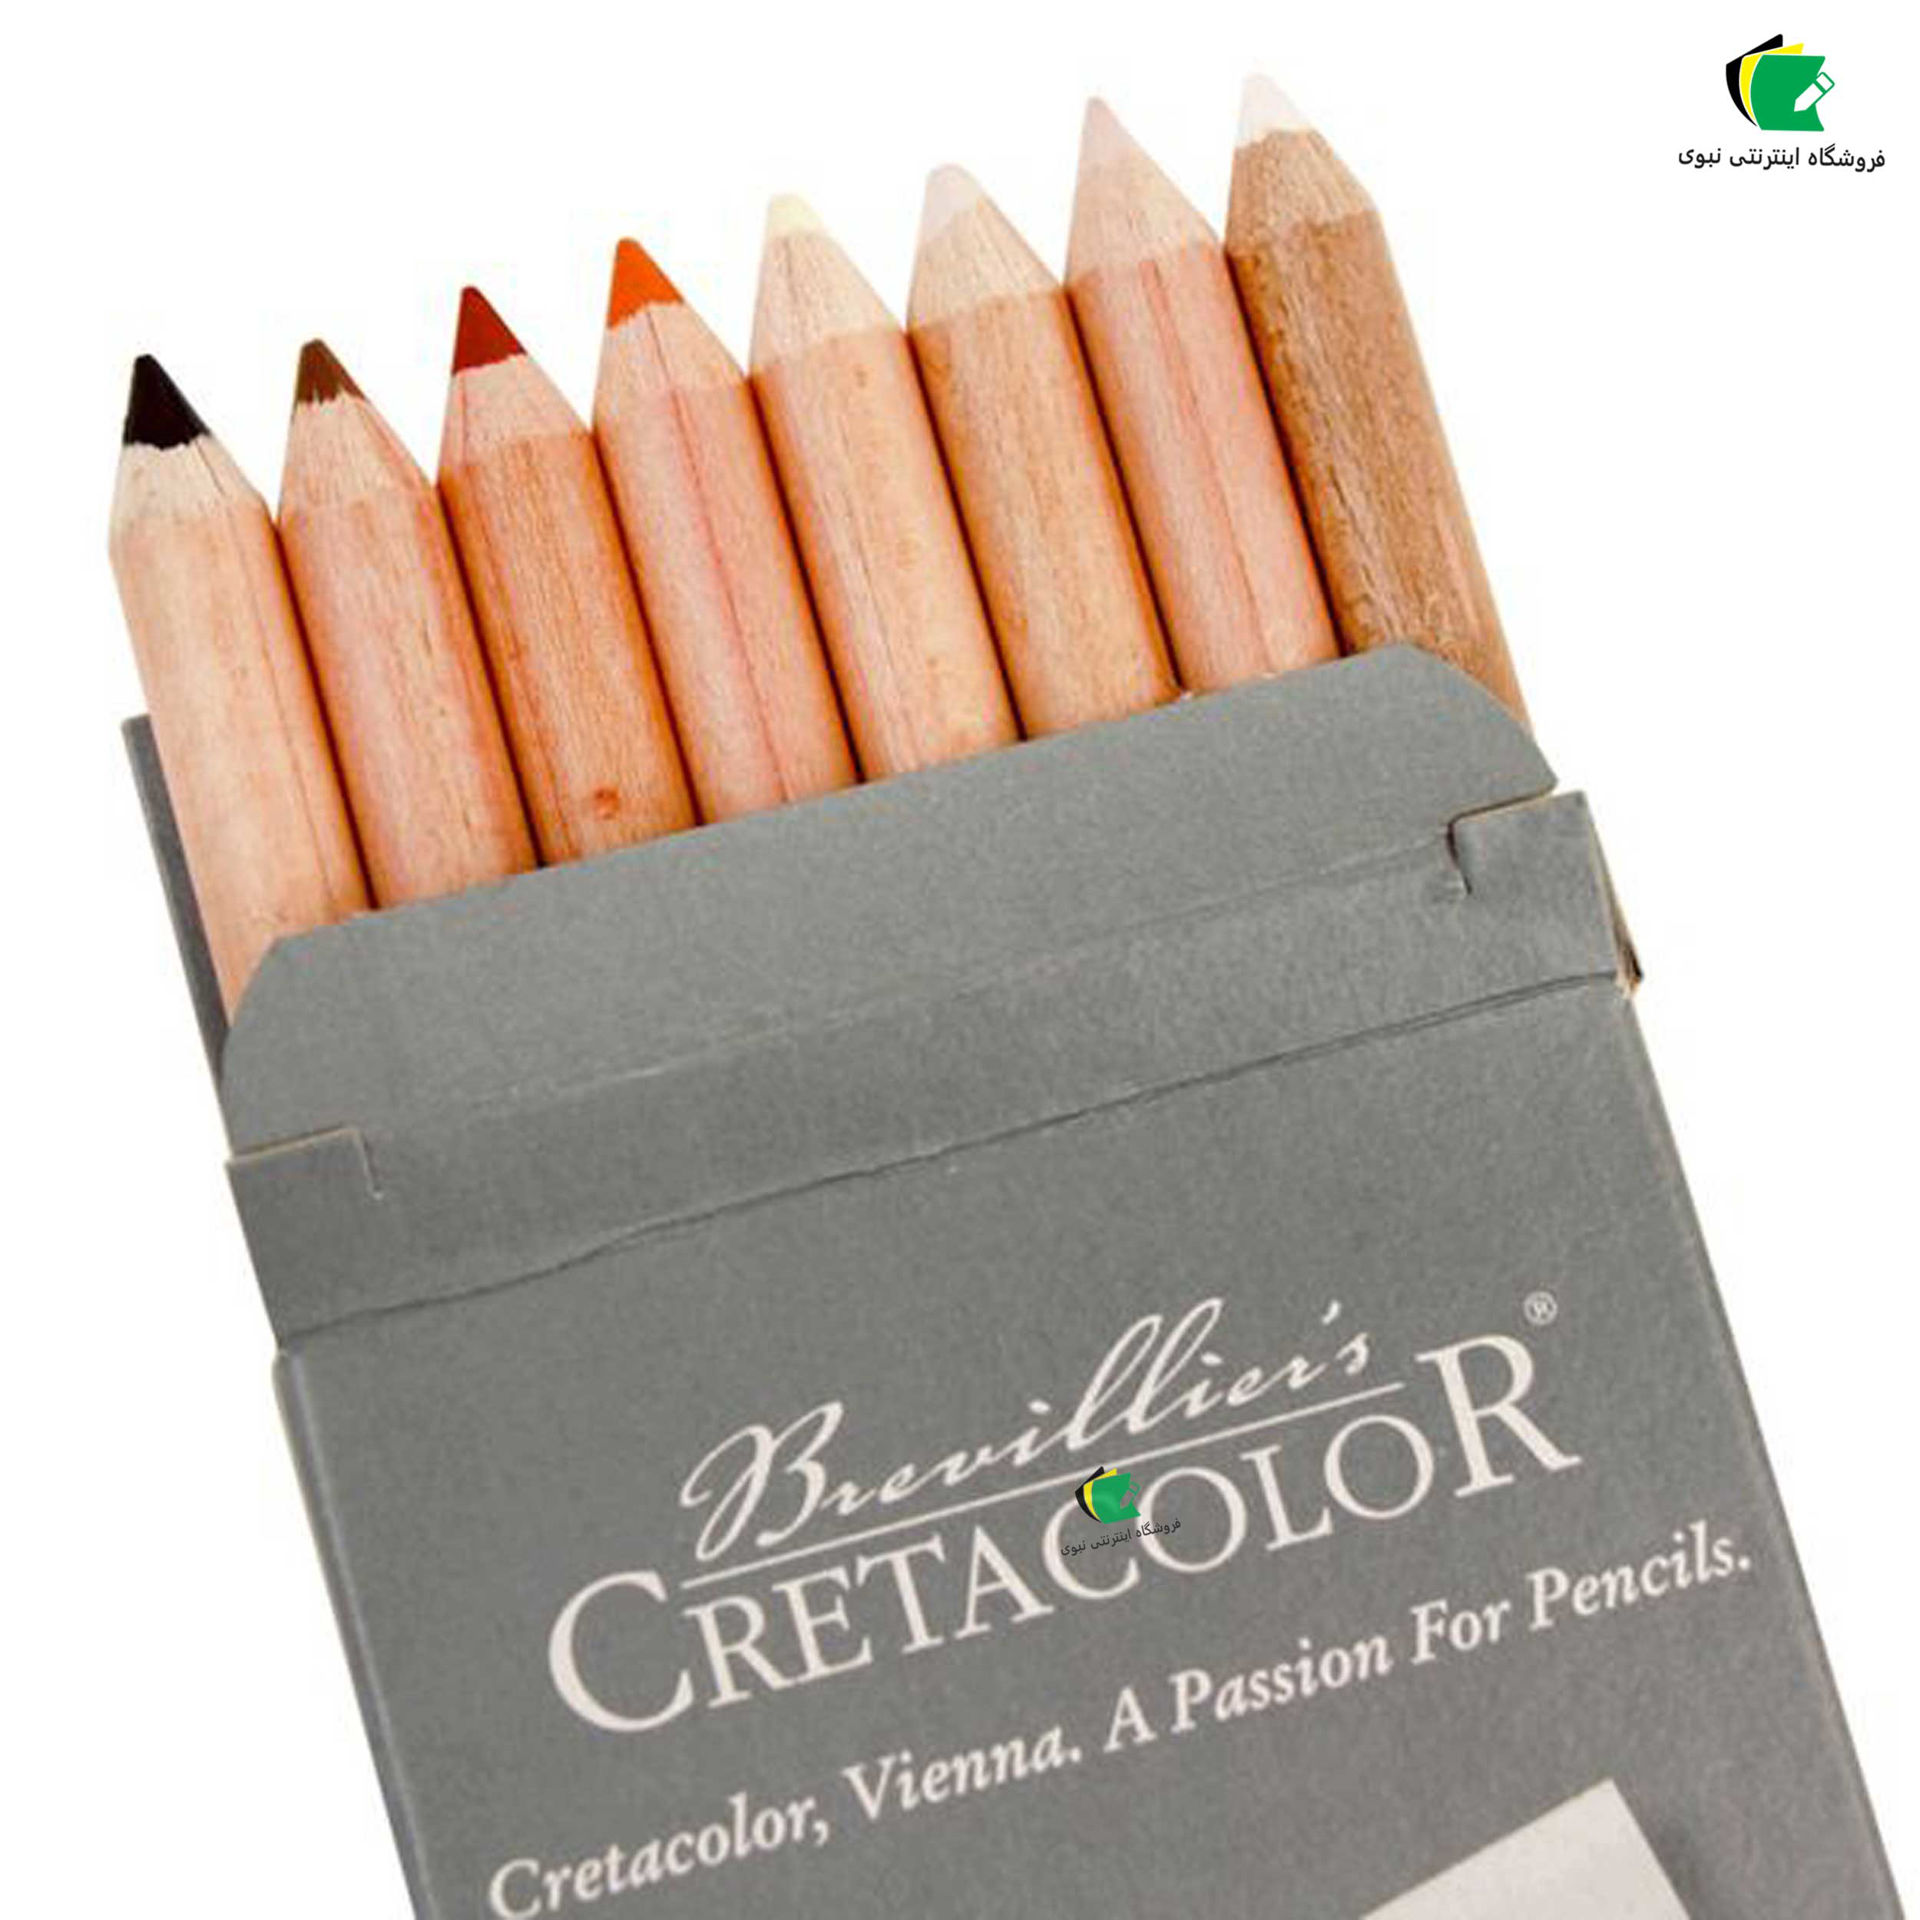 مداد پاستل 8 رنگ کرتاکالر مدل 47418 figure مناسب پرتره و چهره